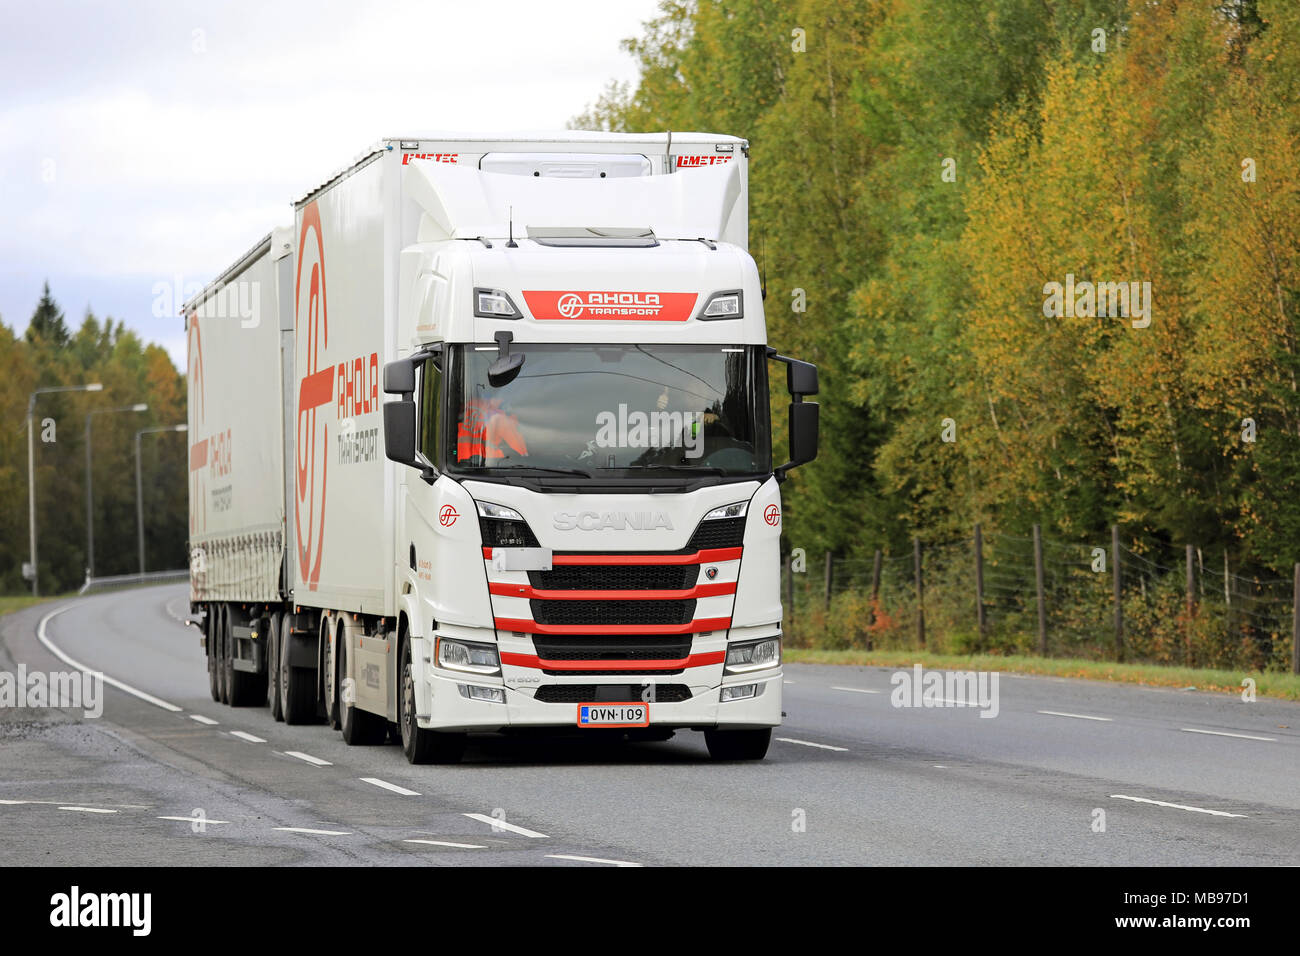 KANGASALA, Finlandia - 21 settembre 2017: Scania R500 carrello carico di Ahola offre trasporto merci lungo l'autostrada in autunno. Foto Stock